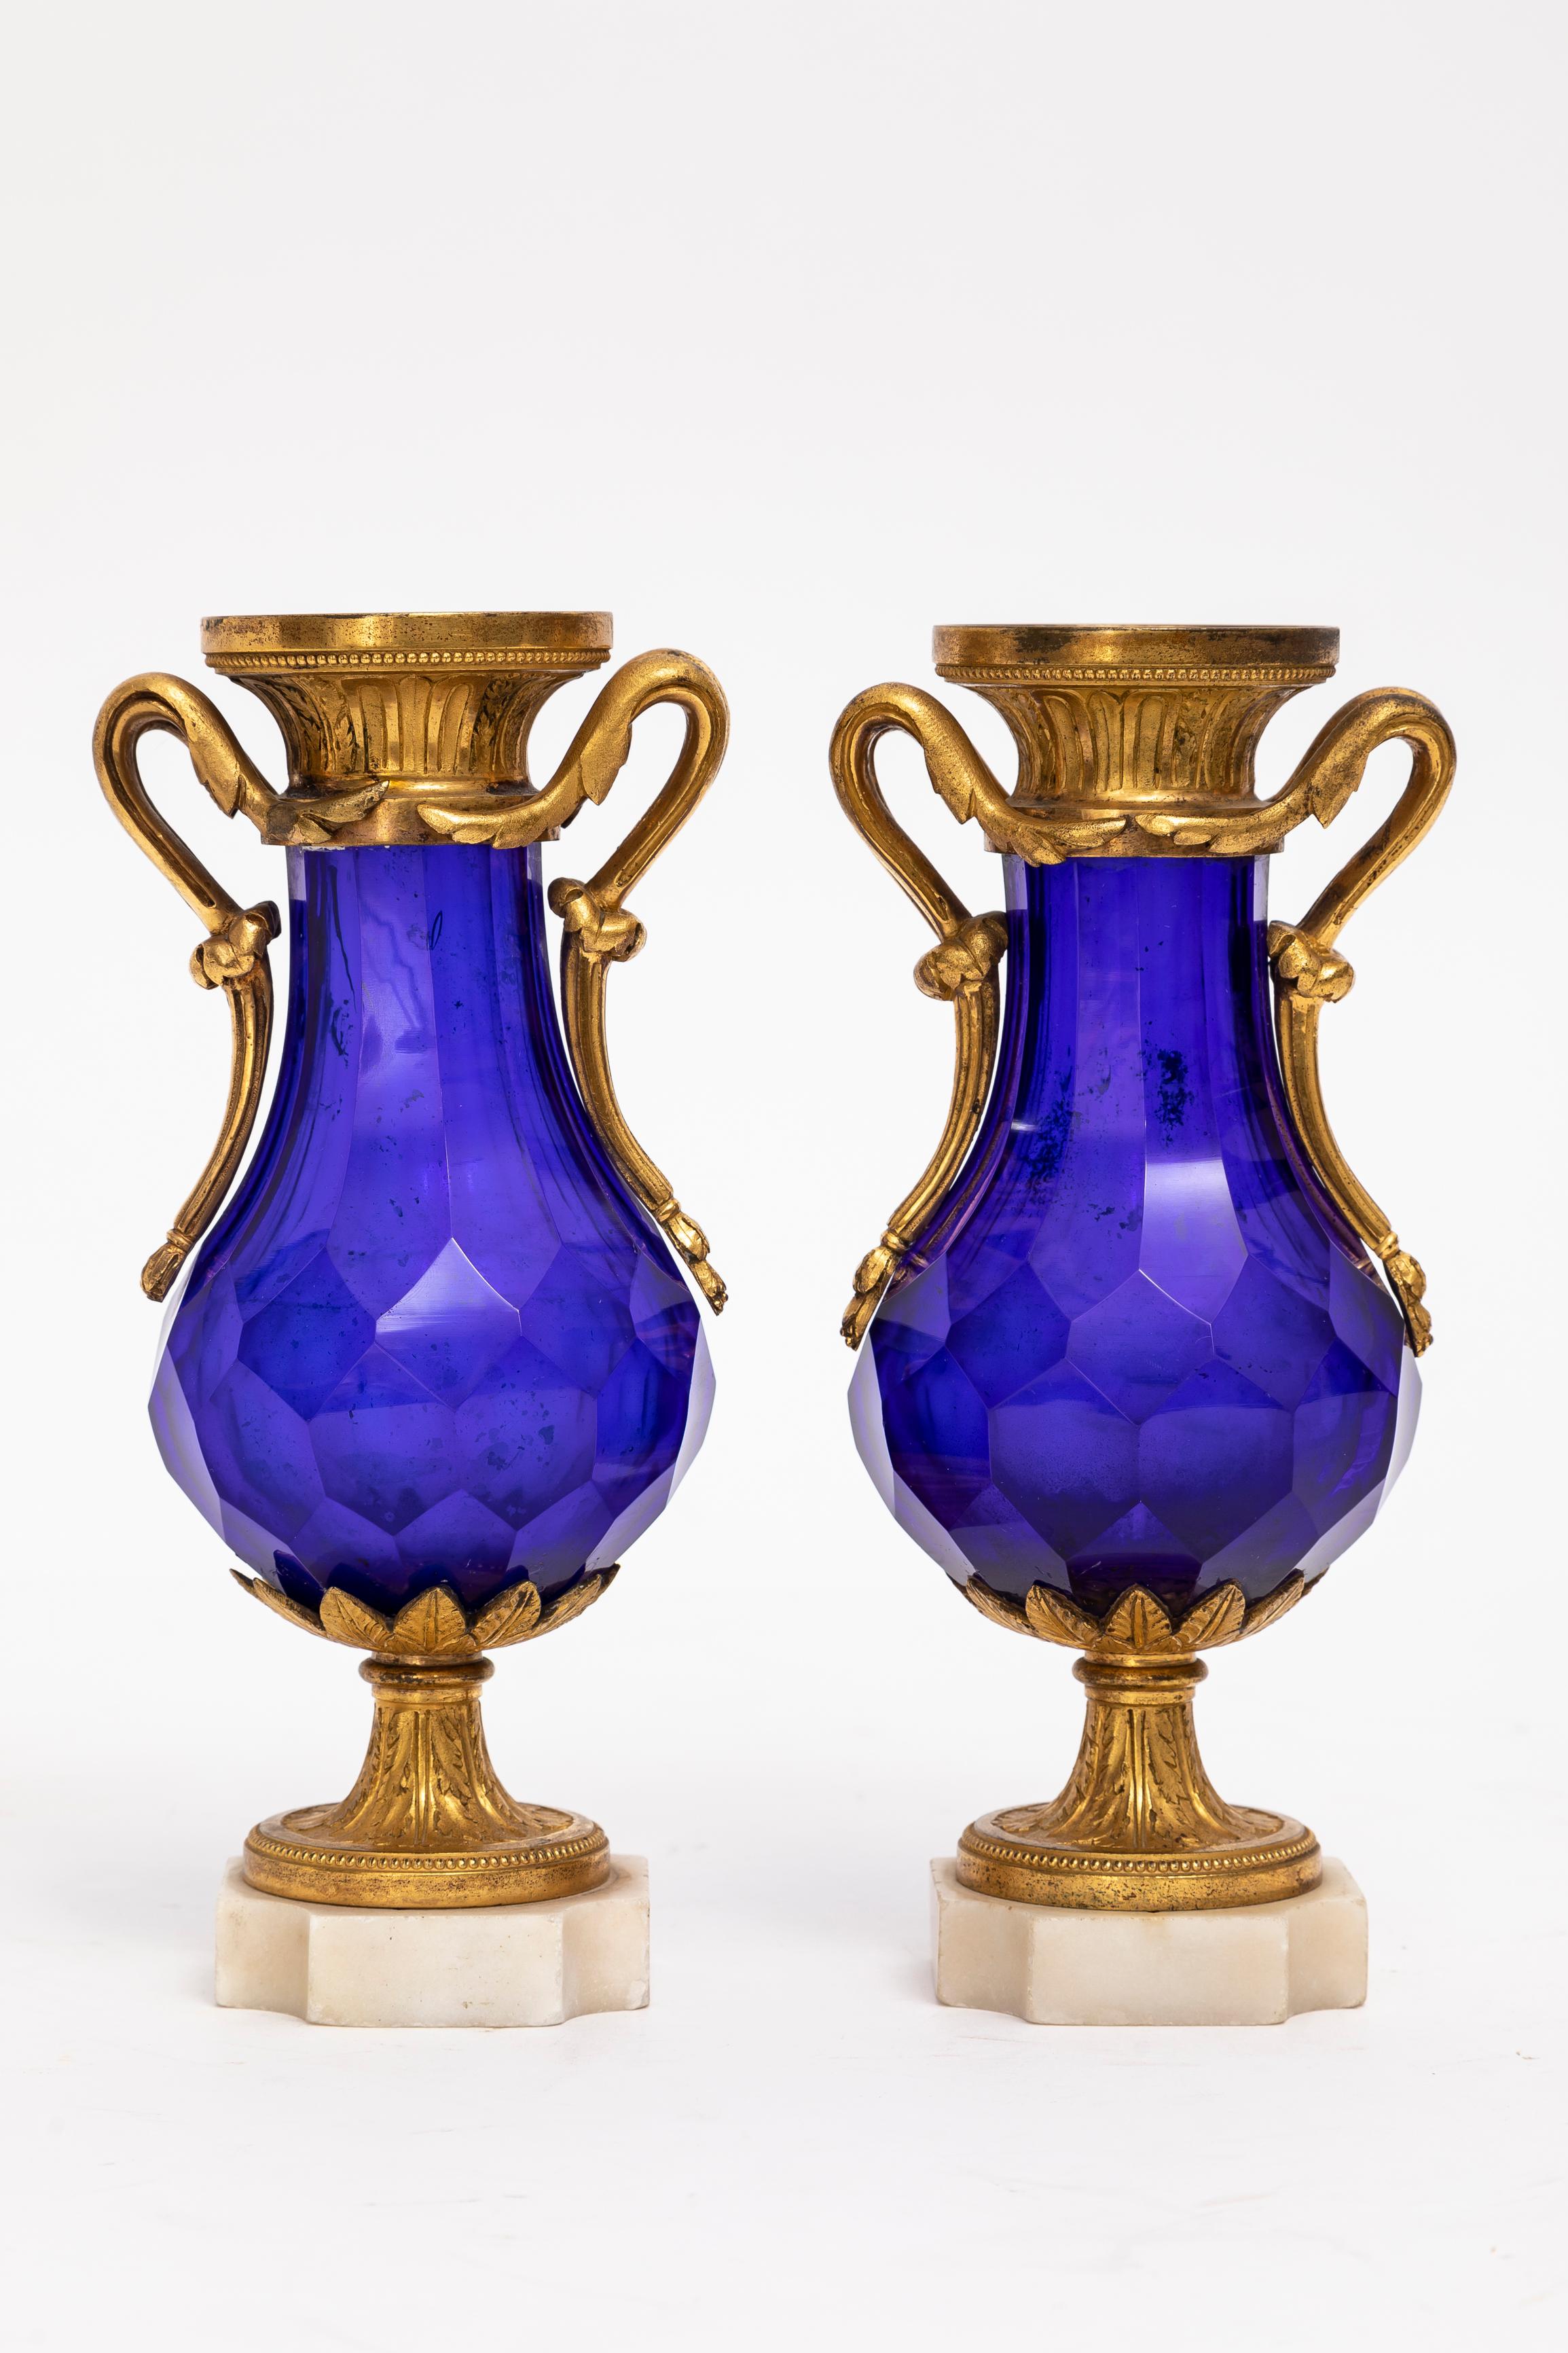 Ein prächtiges Paar russischer Vasen aus kobaltblauem Kristall und Ormolu, aus der Zeit Ludwigs XVI. Jede dieser Vasen zeichnet sich durch ein Höchstmaß an handwerklicher und künstlerischer Qualität aus. Der kobaltblaue Kristall ist ein fesselnder